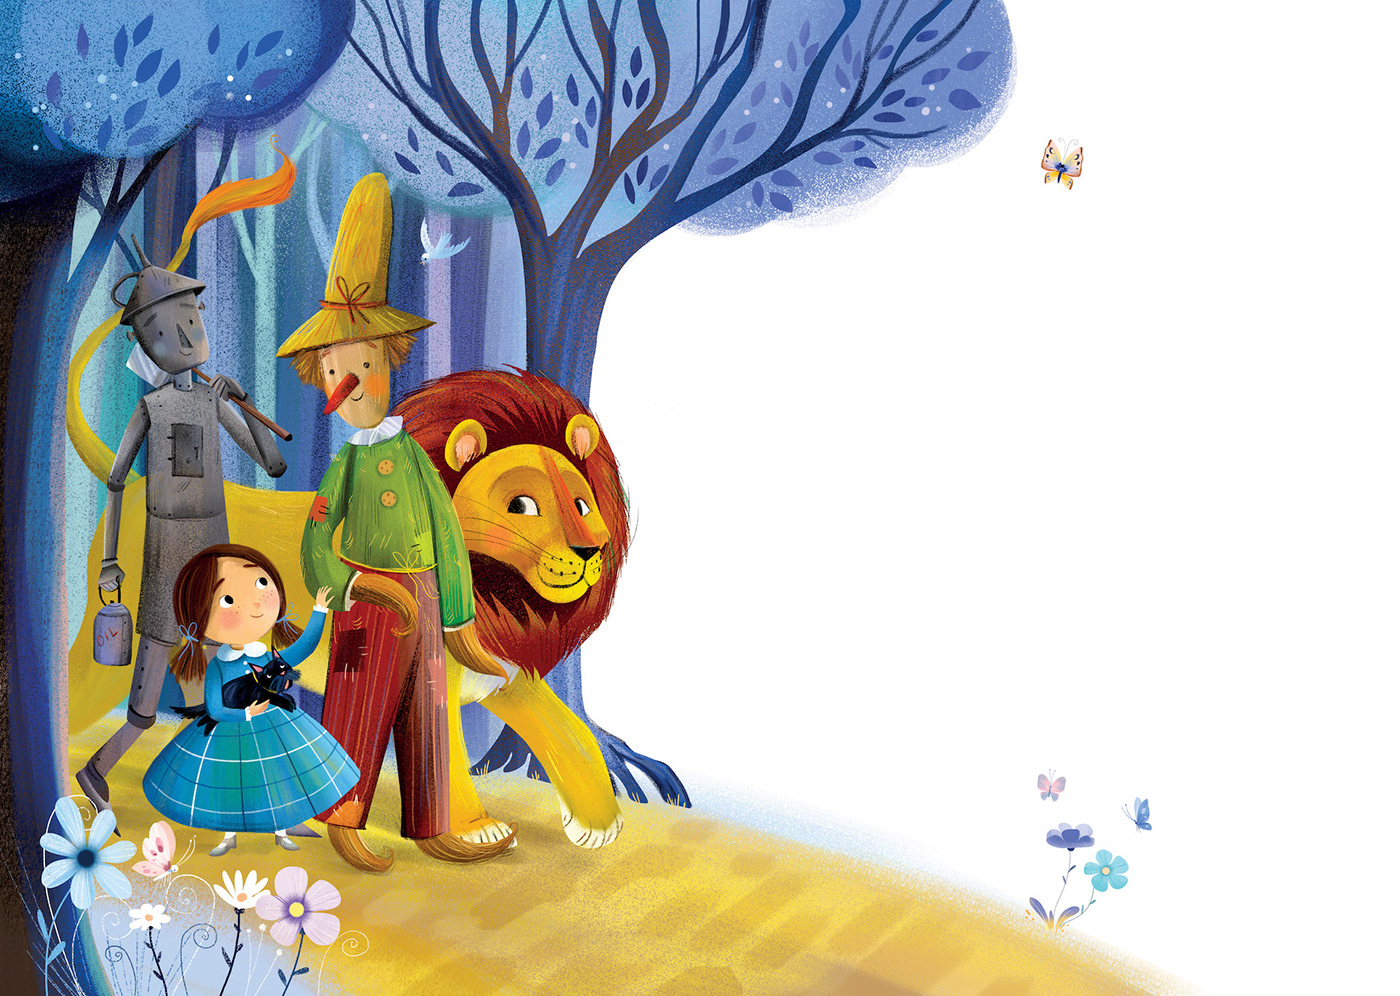 fairytale dorothy children illustration childrenbookillustration picturebook children animals scarecrow OZ wizardofoz